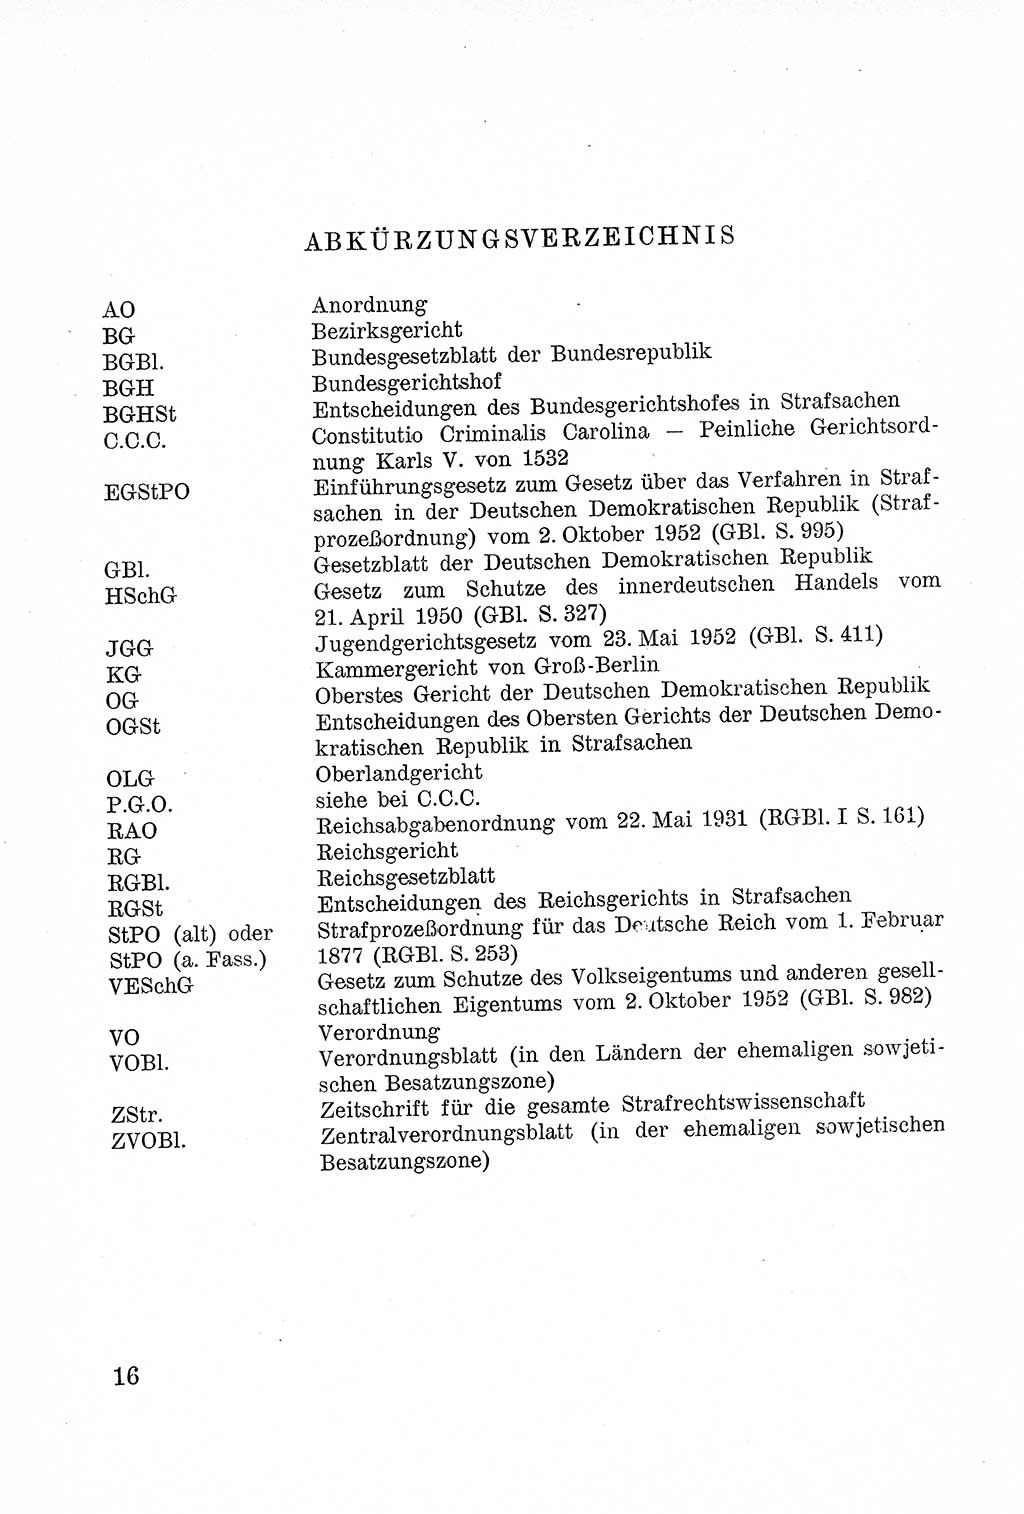 Lehrbuch des Strafrechts der Deutschen Demokratischen Republik (DDR), Allgemeiner Teil 1957, Seite 16 (Lb. Strafr. DDR AT 1957, S. 16)